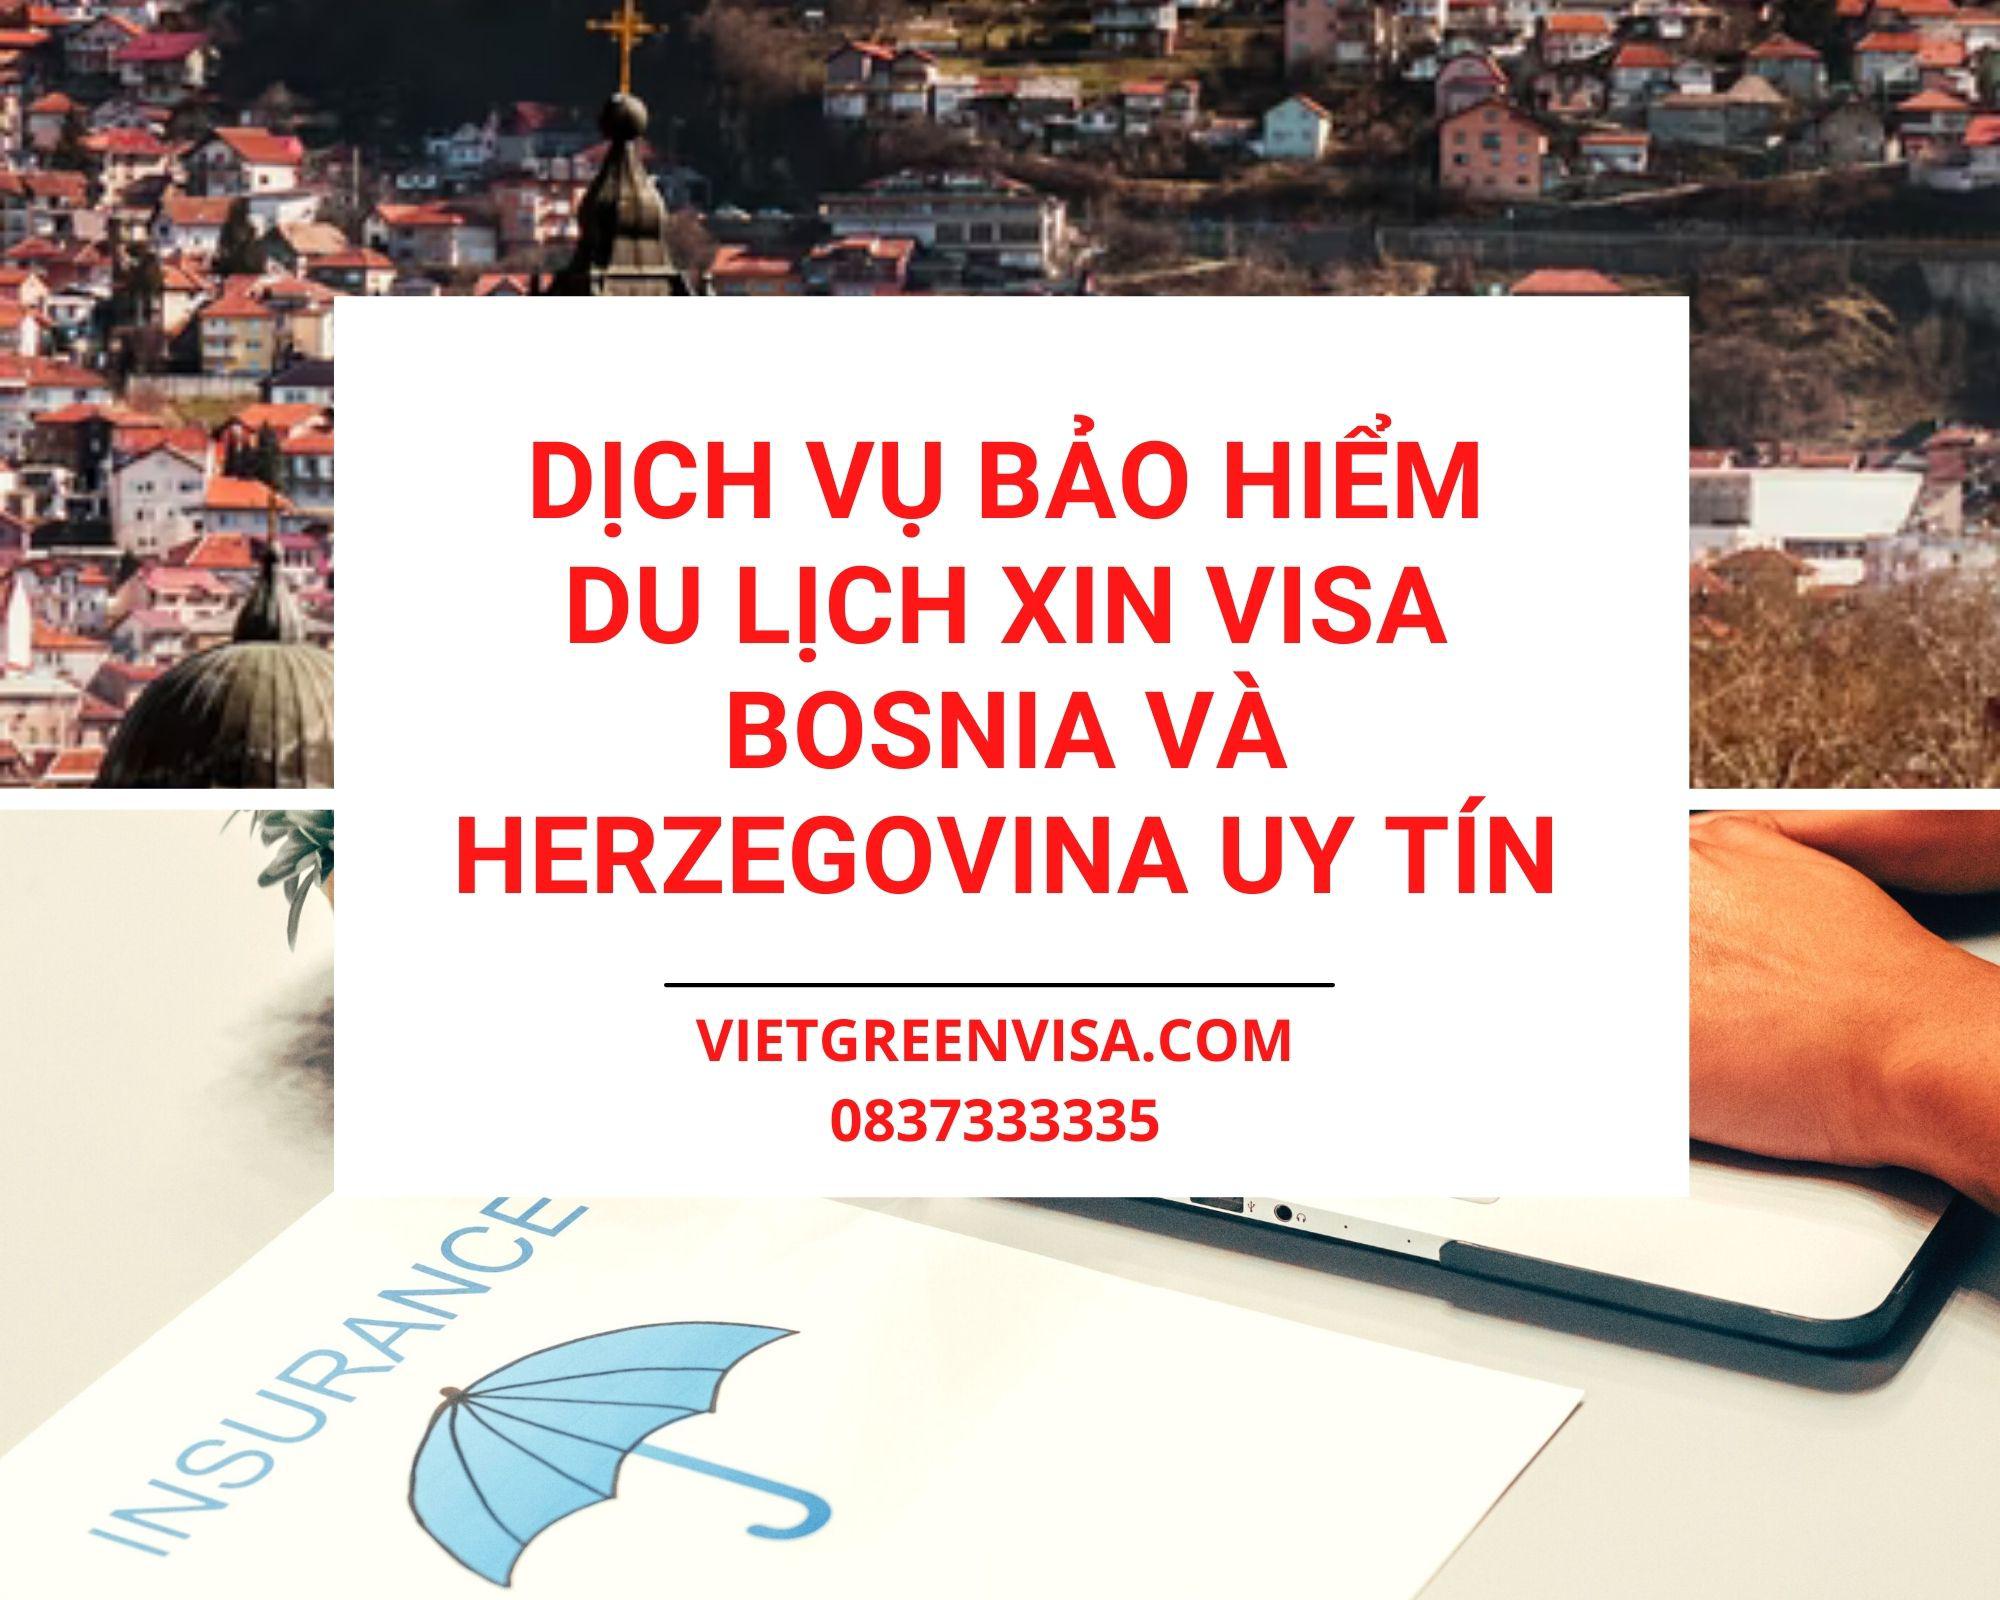 Dịch vụ bảo hiểm du lịch xin visa Bosnia và Herzegovina giá tốt nhất